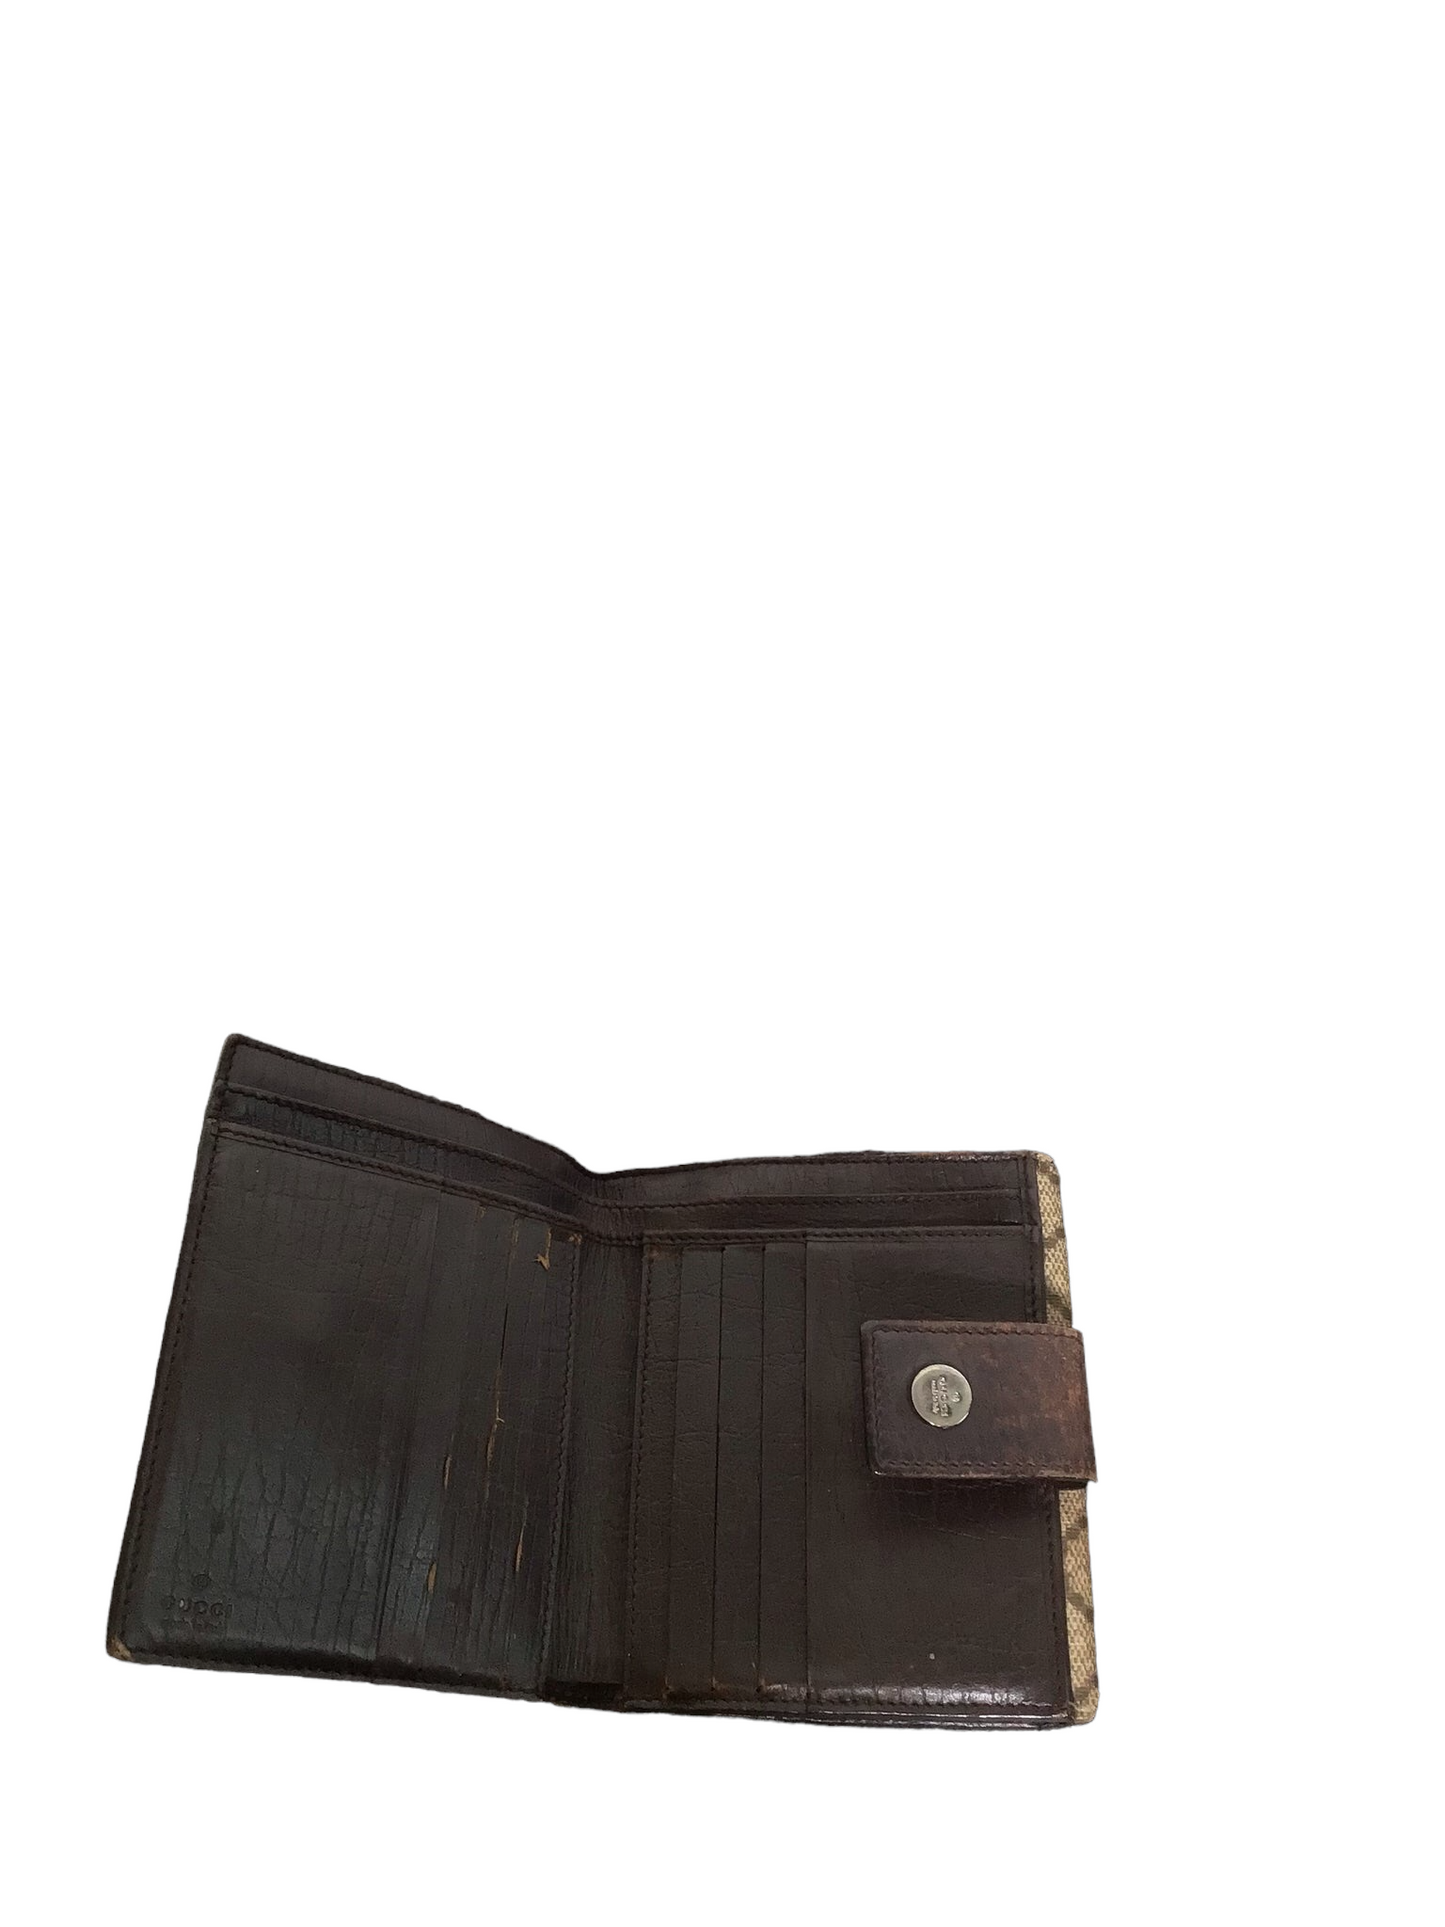 Gucci Monogram Purse/Wallet